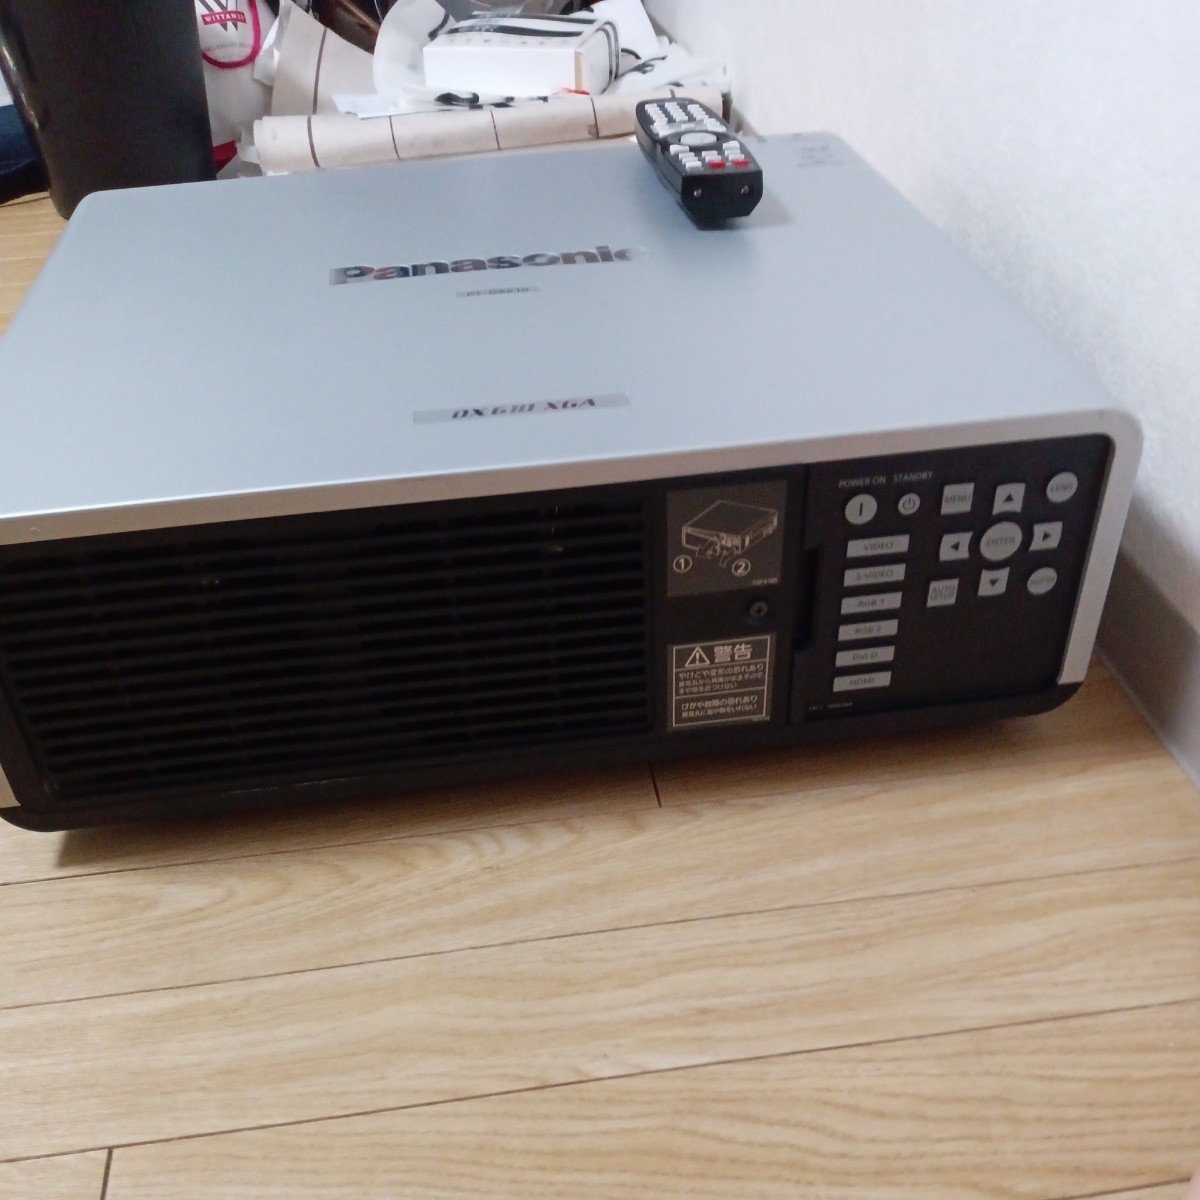 中古☆ Panasonic パナソニック DLPプロジェクター PT-DX610S 使用時間11645hランプ点灯時間1432H 現状品